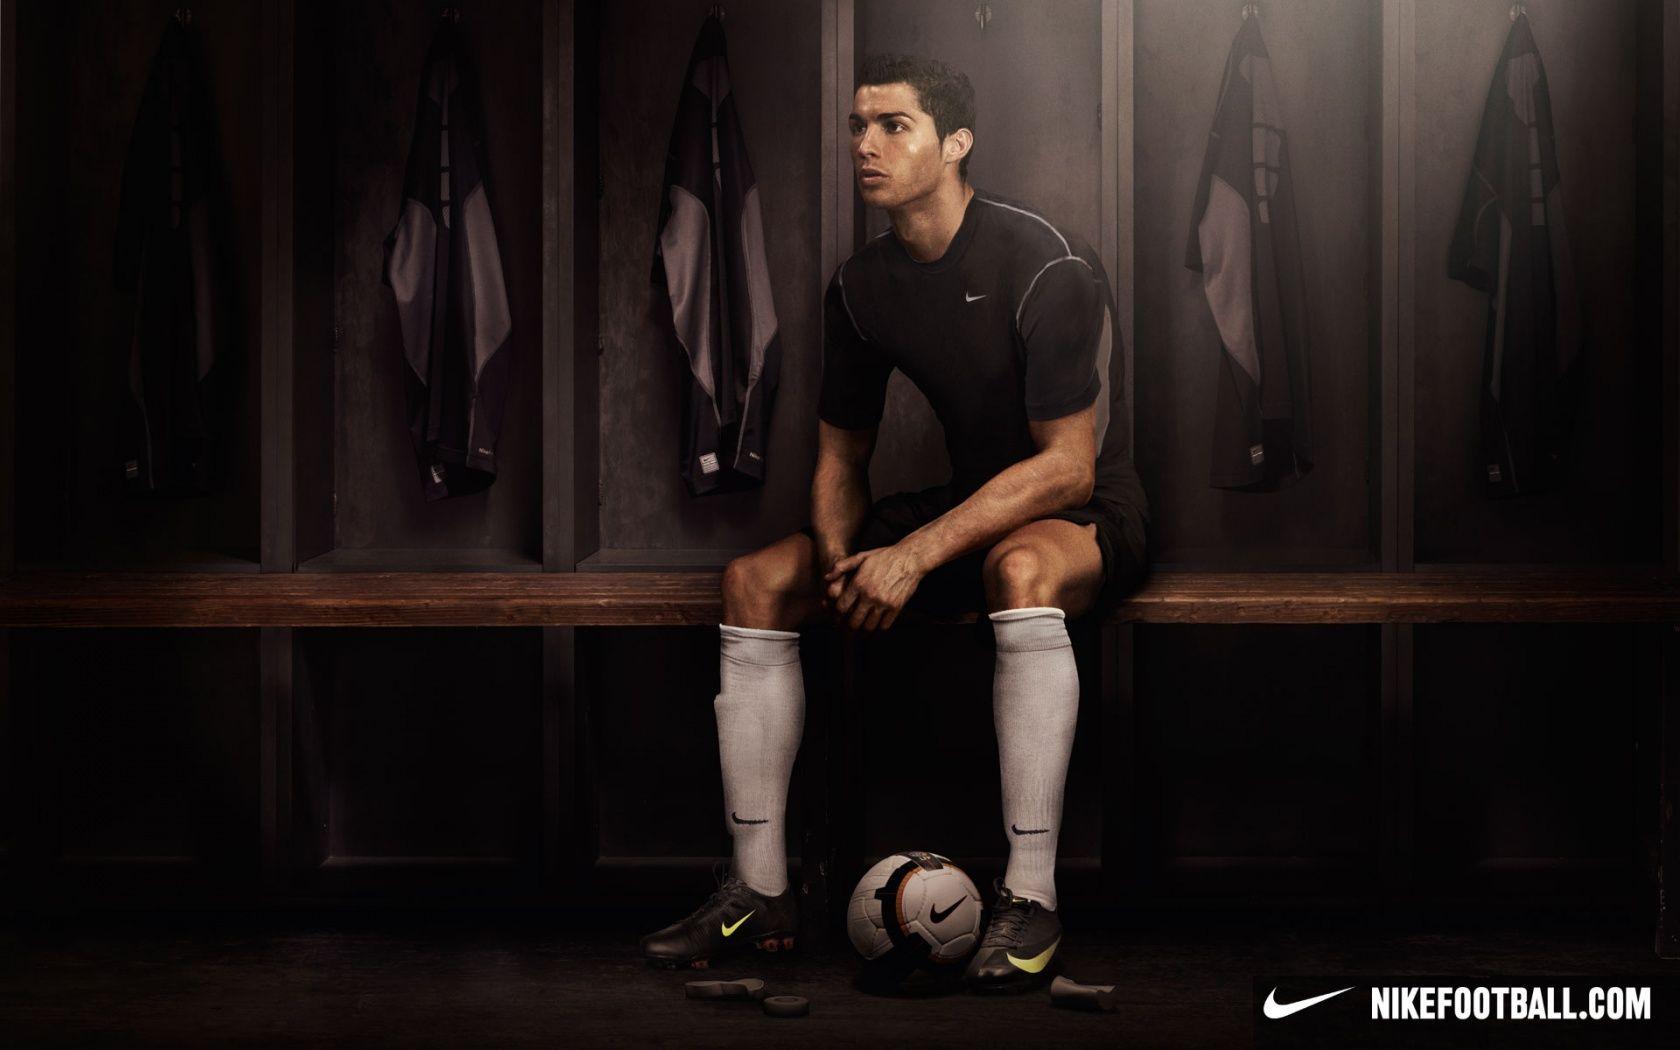 Download the Cristiano Ronaldo Nike Wallpaper, Cristiano Ronaldo